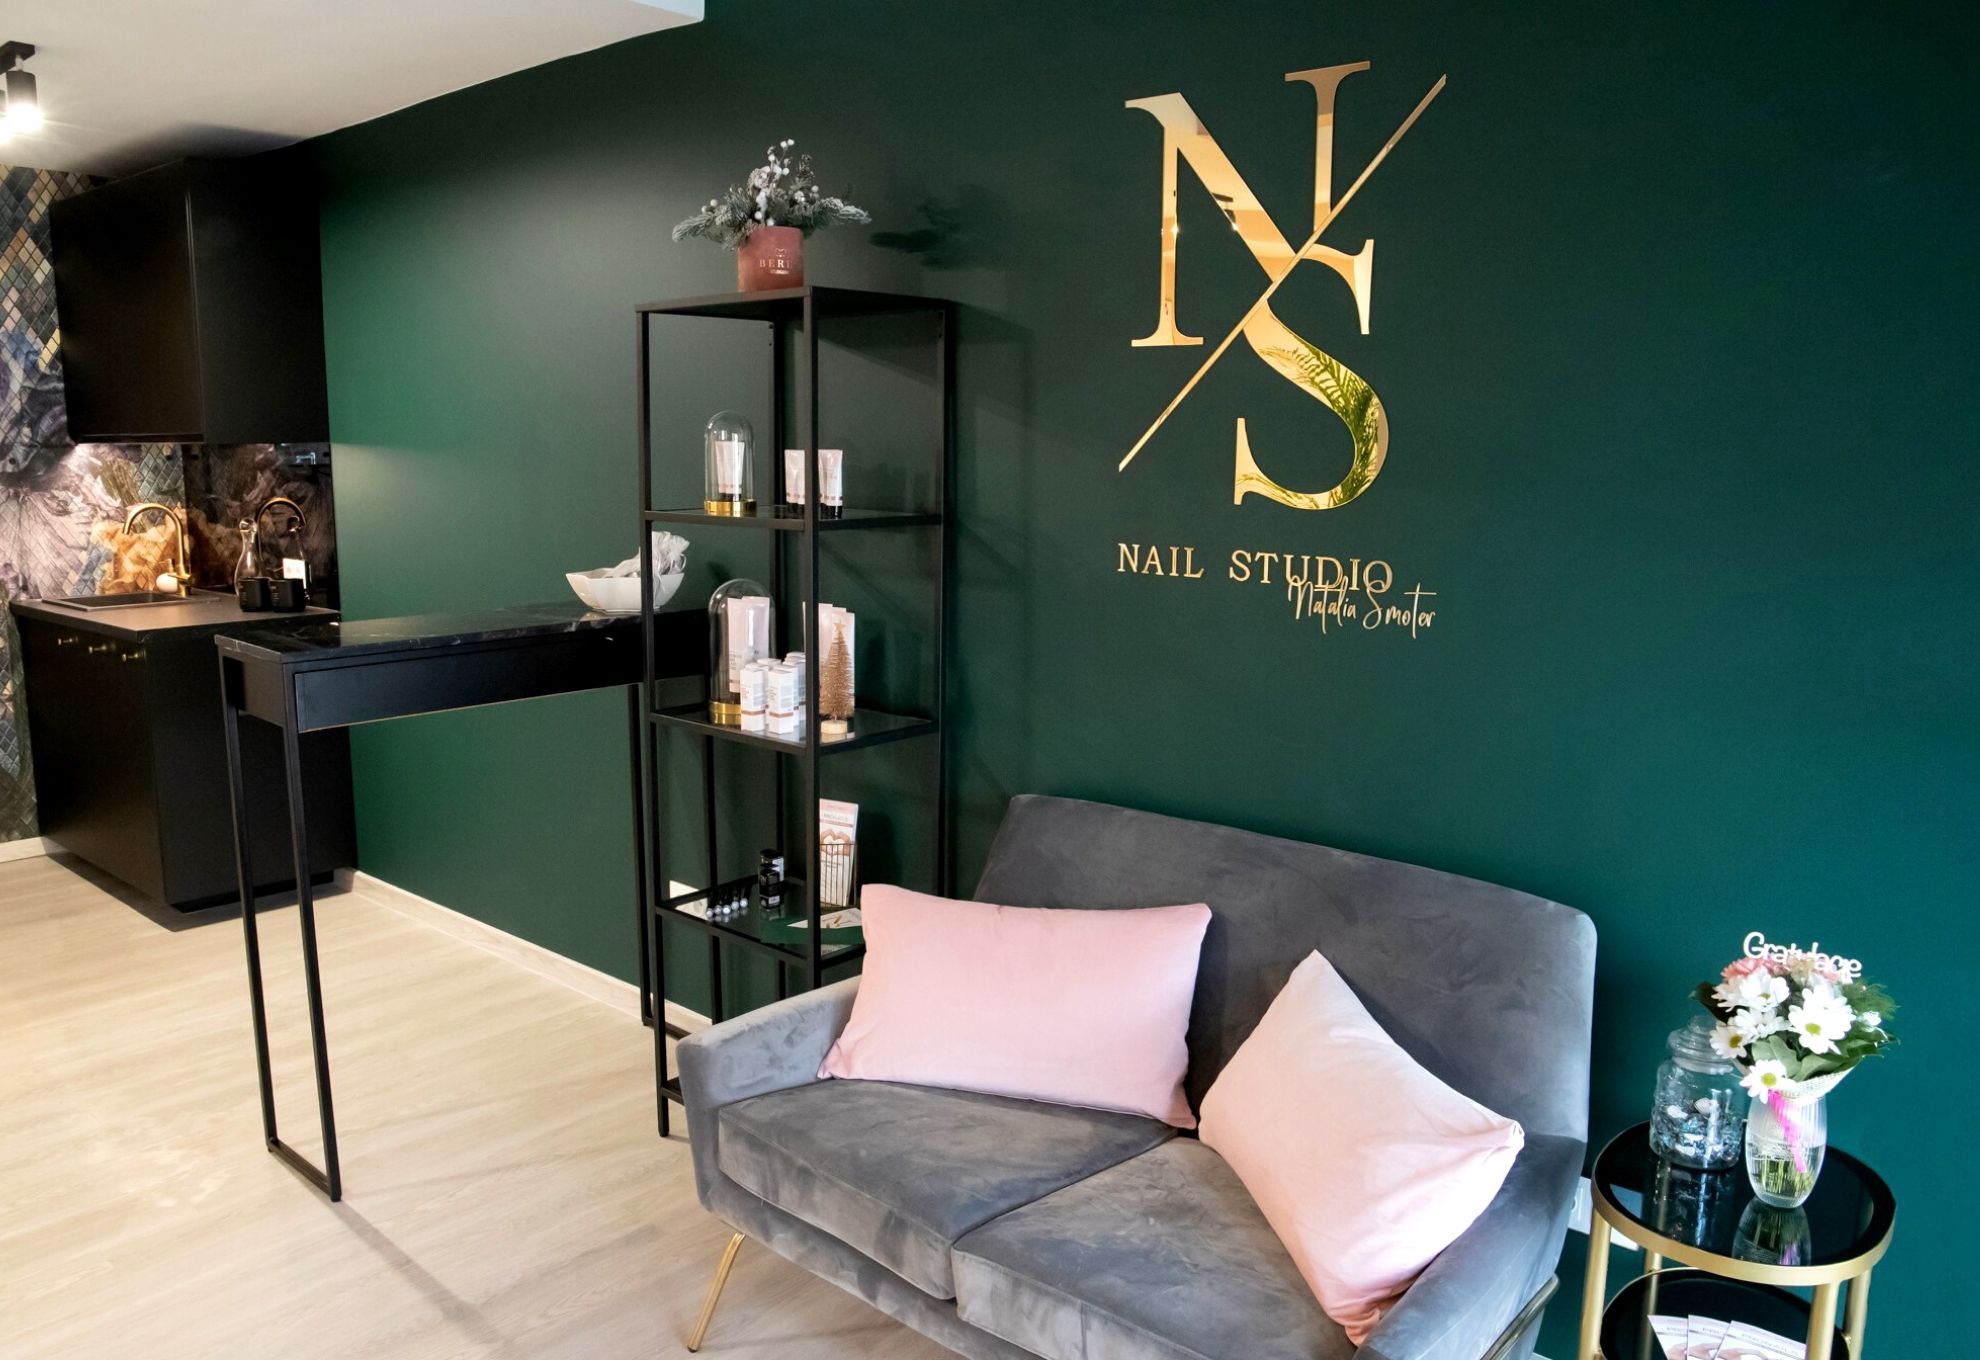 NS Nail Studio - wnętrze salonu stylizacji paznokci